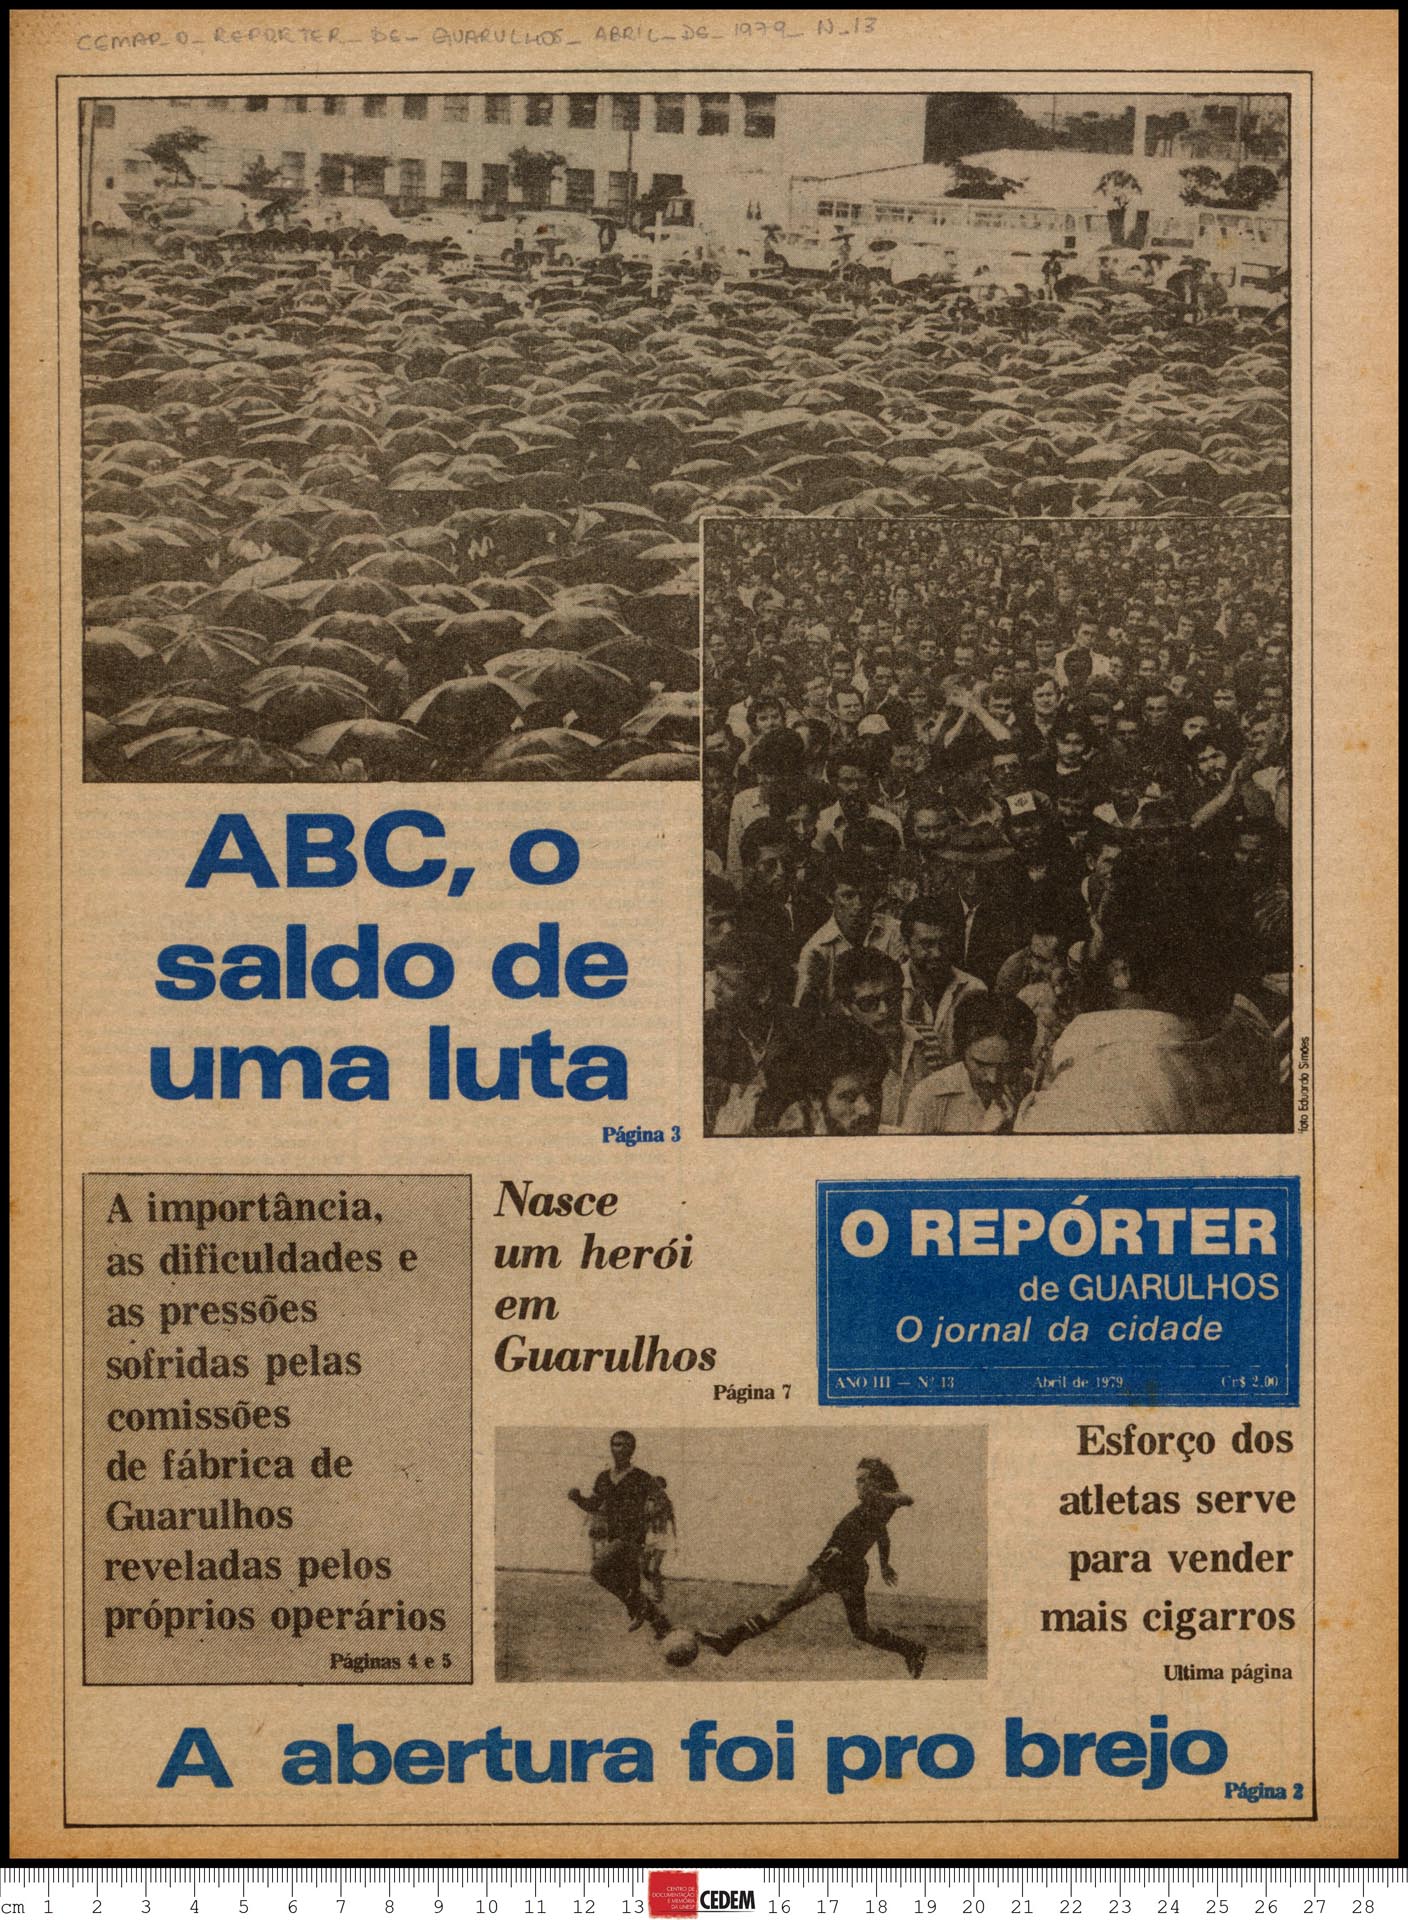 O reportér de Guarulhos - 13 - abr. 1979